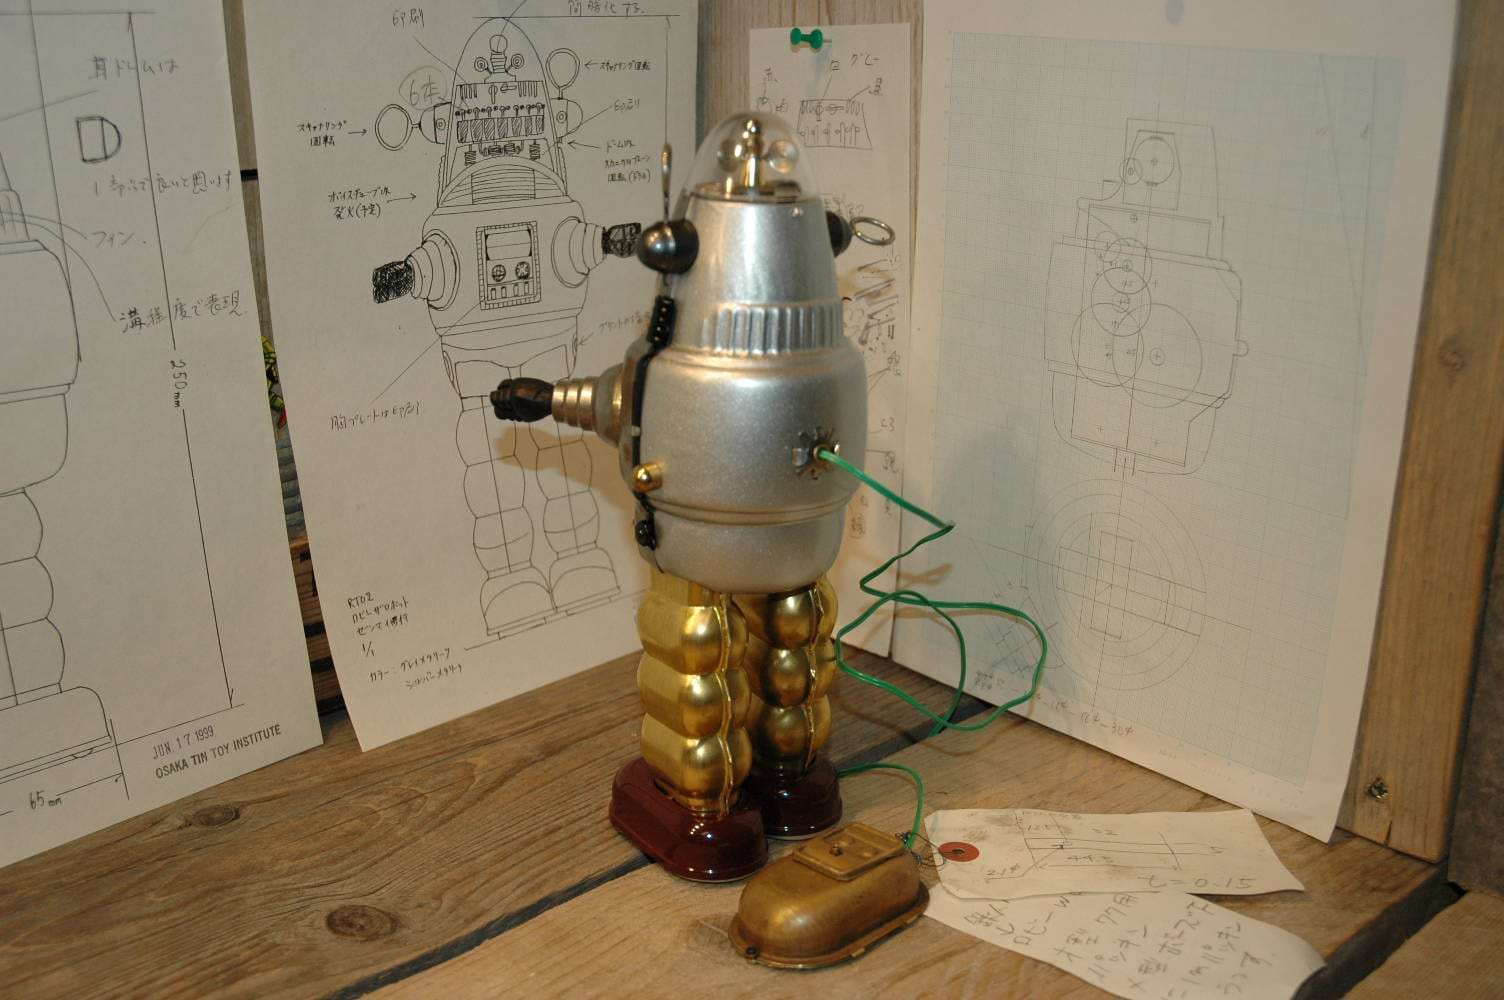 Osaka Tin Toy Institute - Robby the Robot Prototype